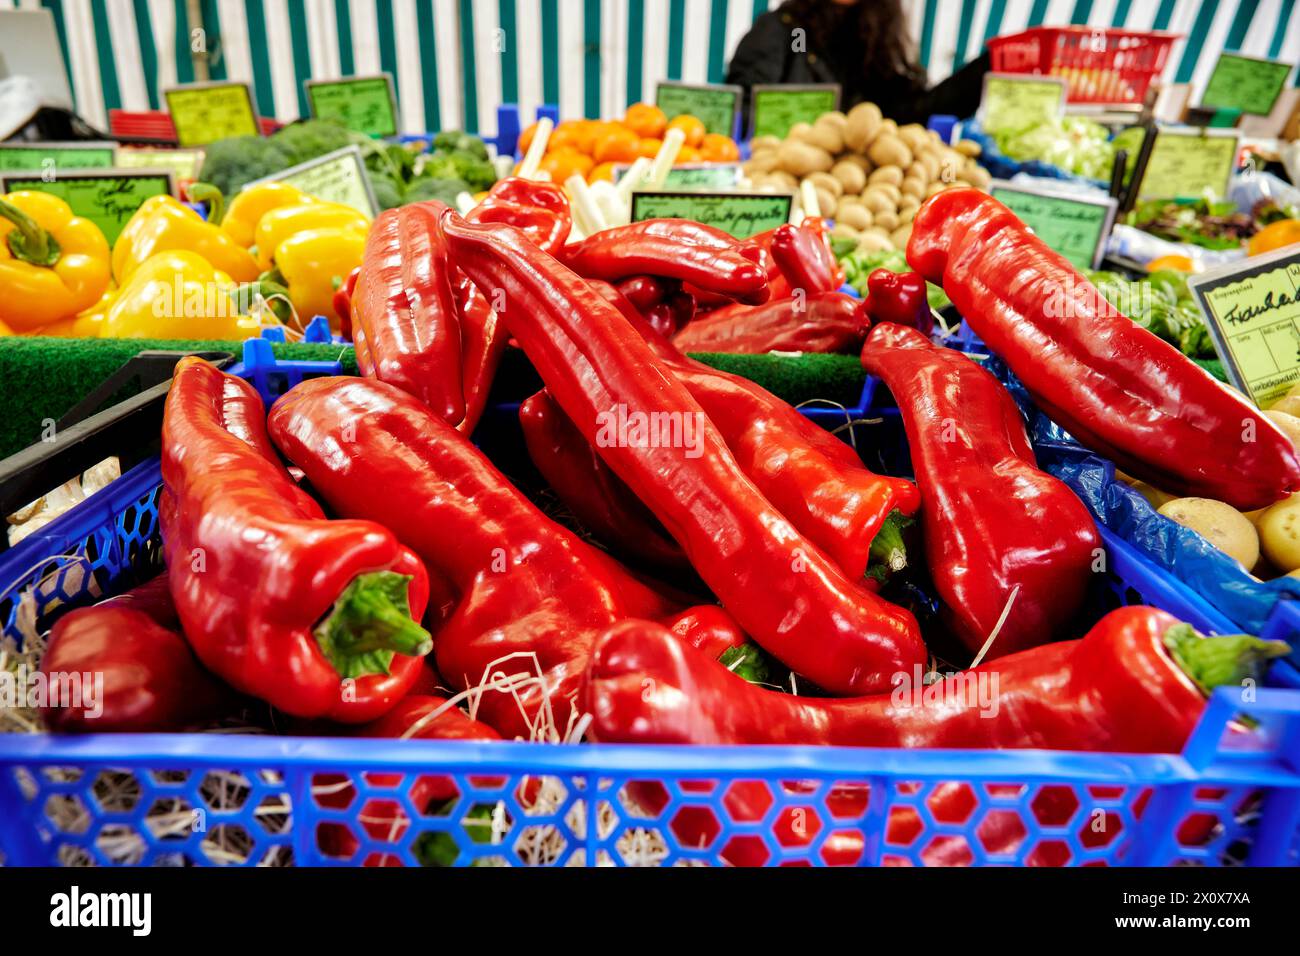 Reichhaltige Obst- und Gemüseauswahl an einem Marktstand. Stock Photo